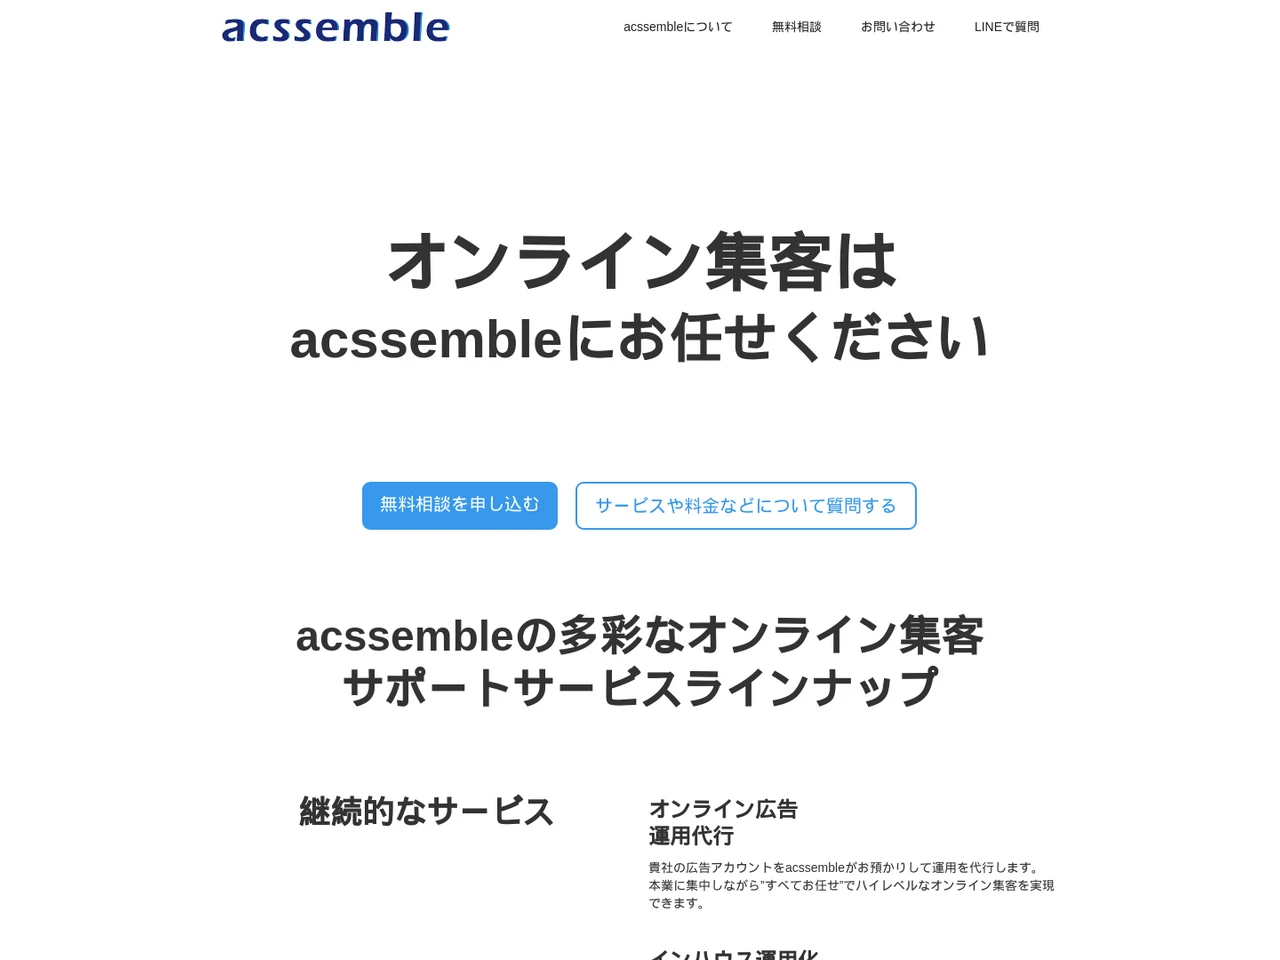 acssemble (アクセンブル)